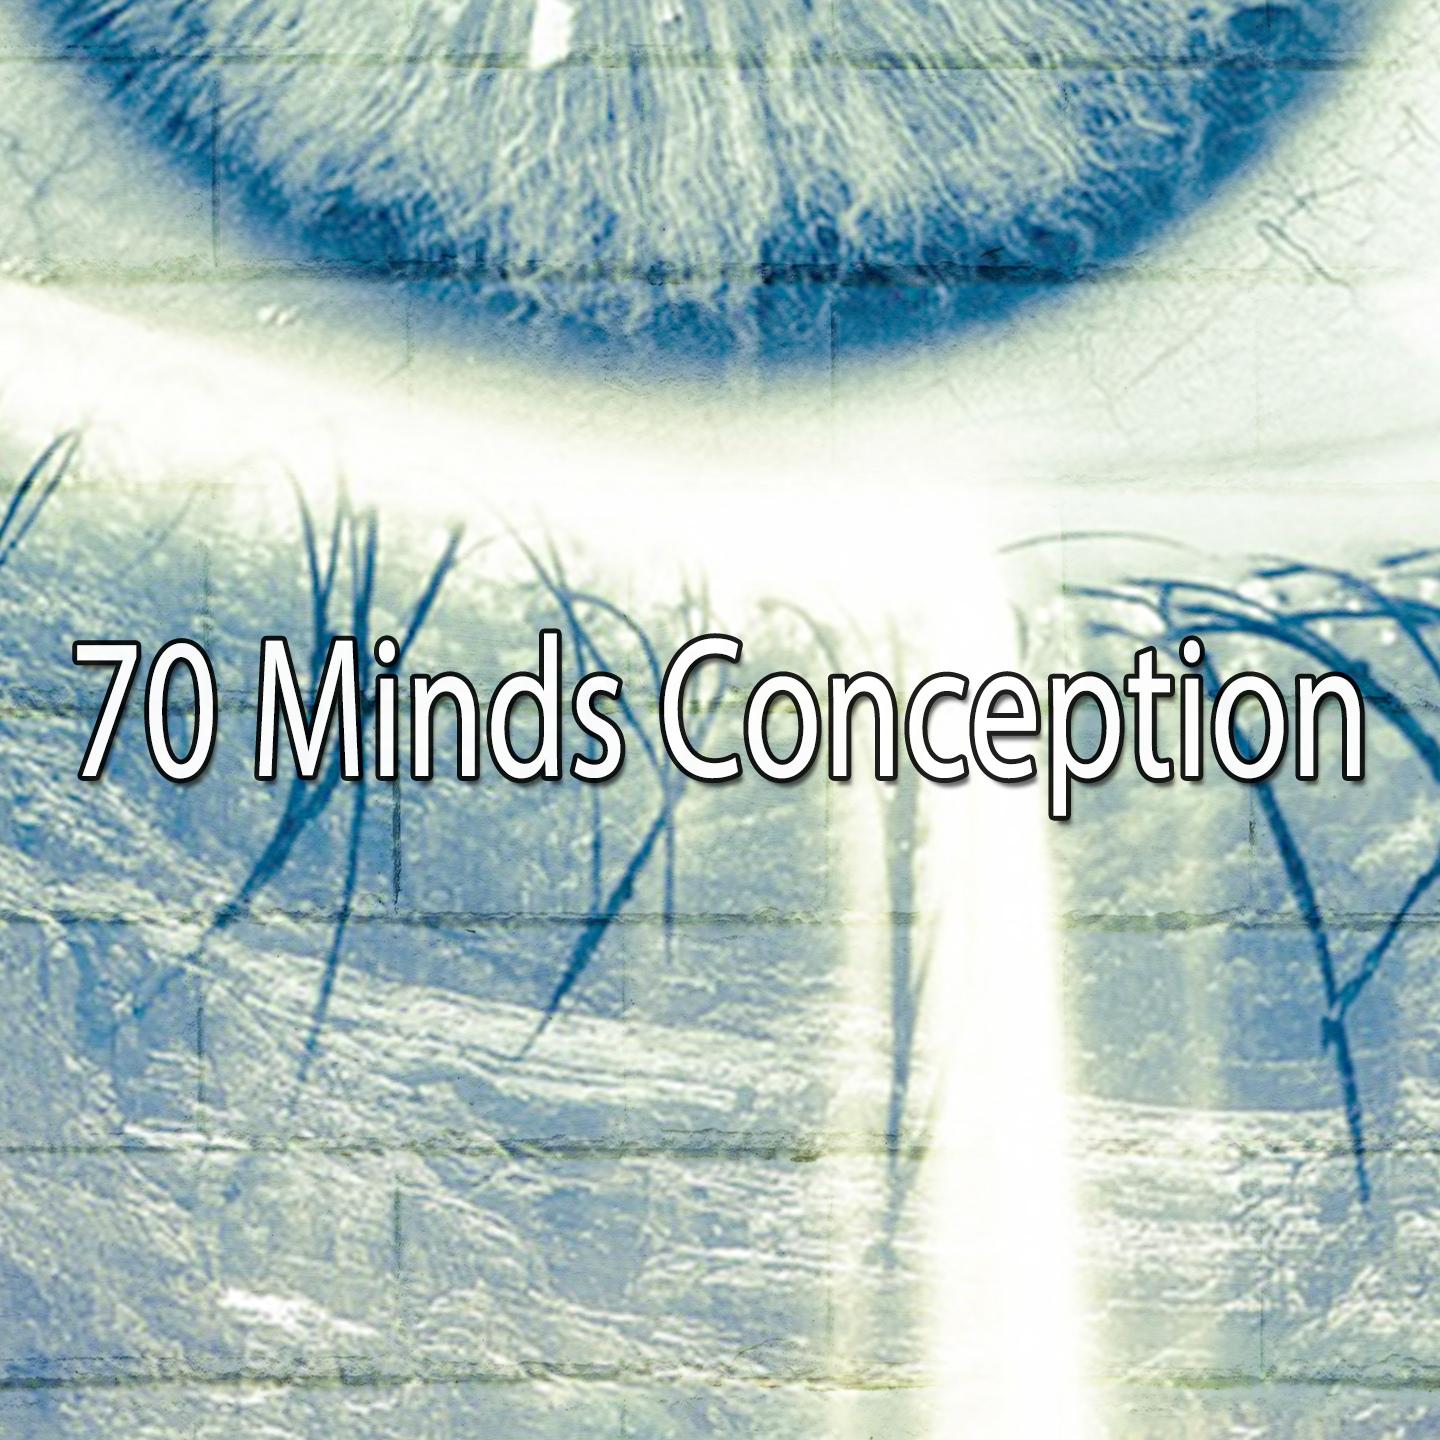 70 Minds Conception